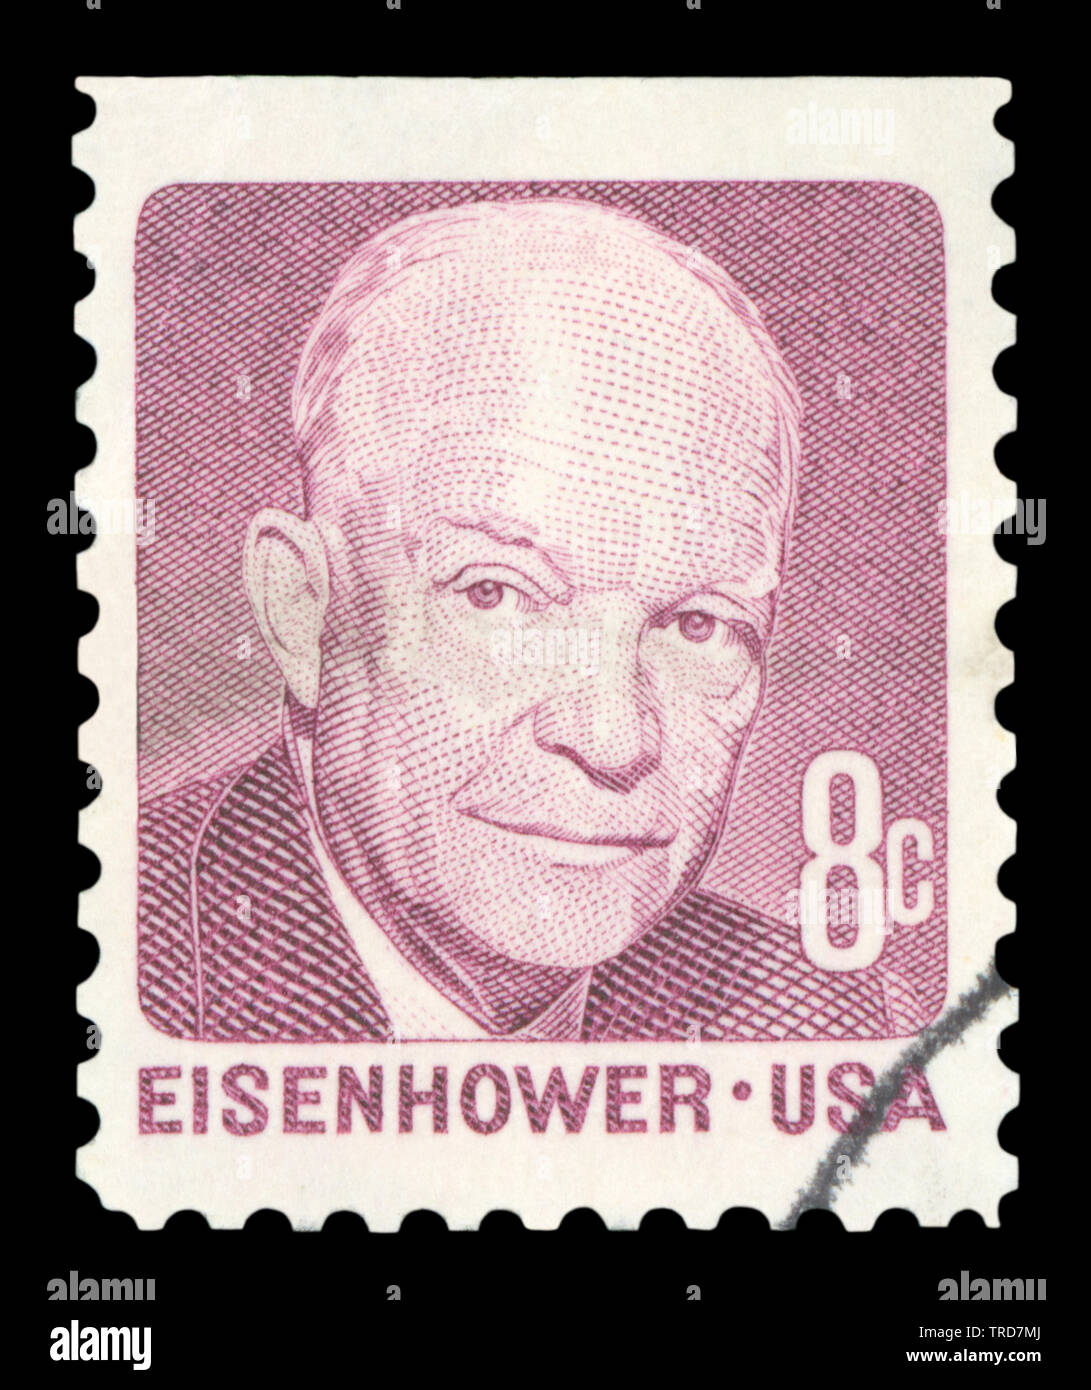 Estados Unidos de América: circa 1971: utiliza un sello postal de los EE.UU., que representa un retrato del ex Presidente de los Estados Unidos, Dwight D. Eisenhower, circa 1971. Foto de stock